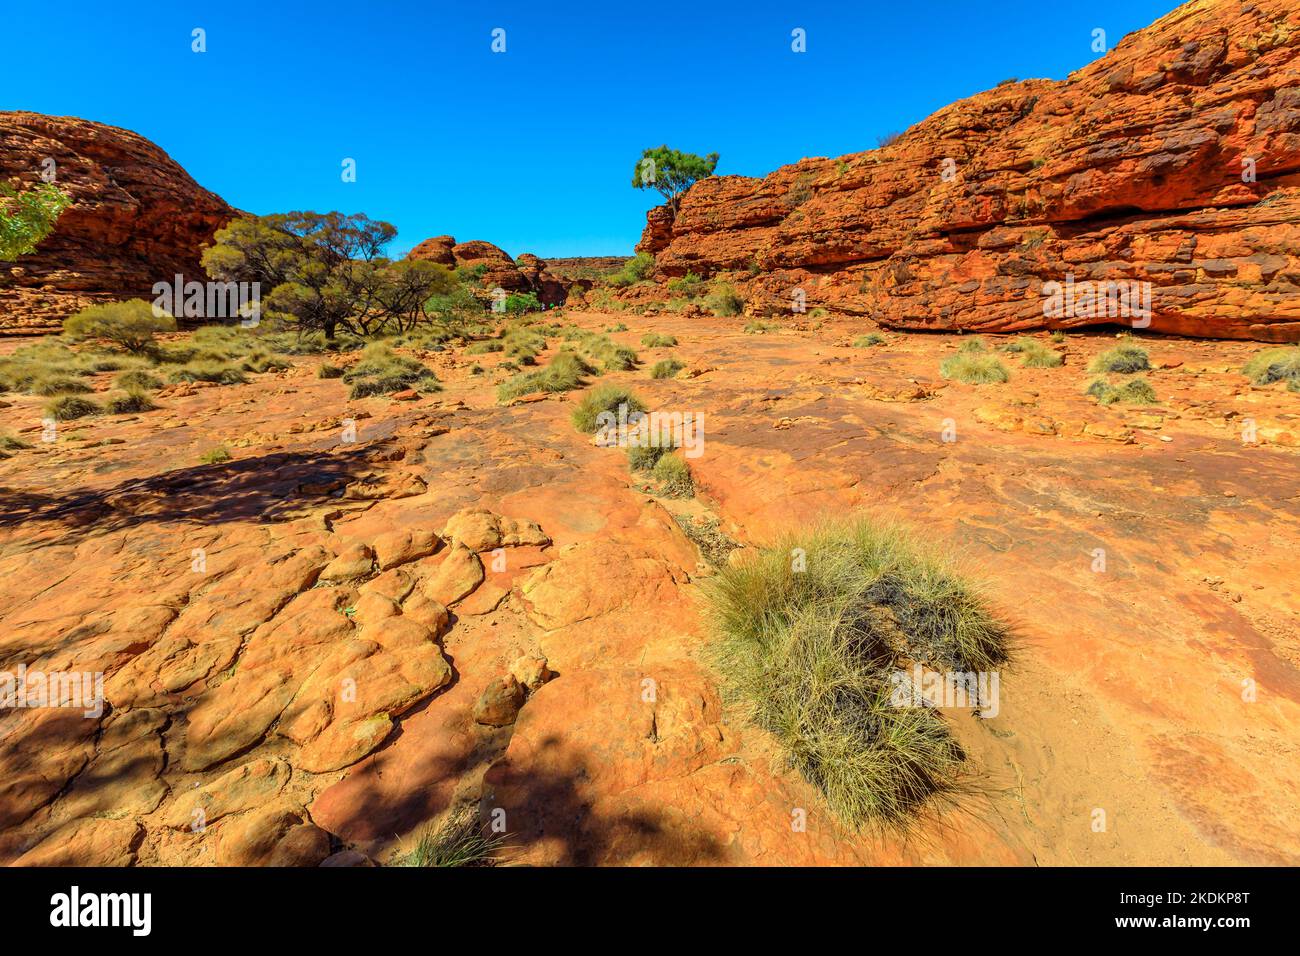 Die malerischen Sandsteinkuppen, die Lost City genannt werden, befinden sich am Anfang des Kings Canyon Rim im Watarrka National Park, Zentralaustralien. Kultige Attraktion Platz in Stockfoto